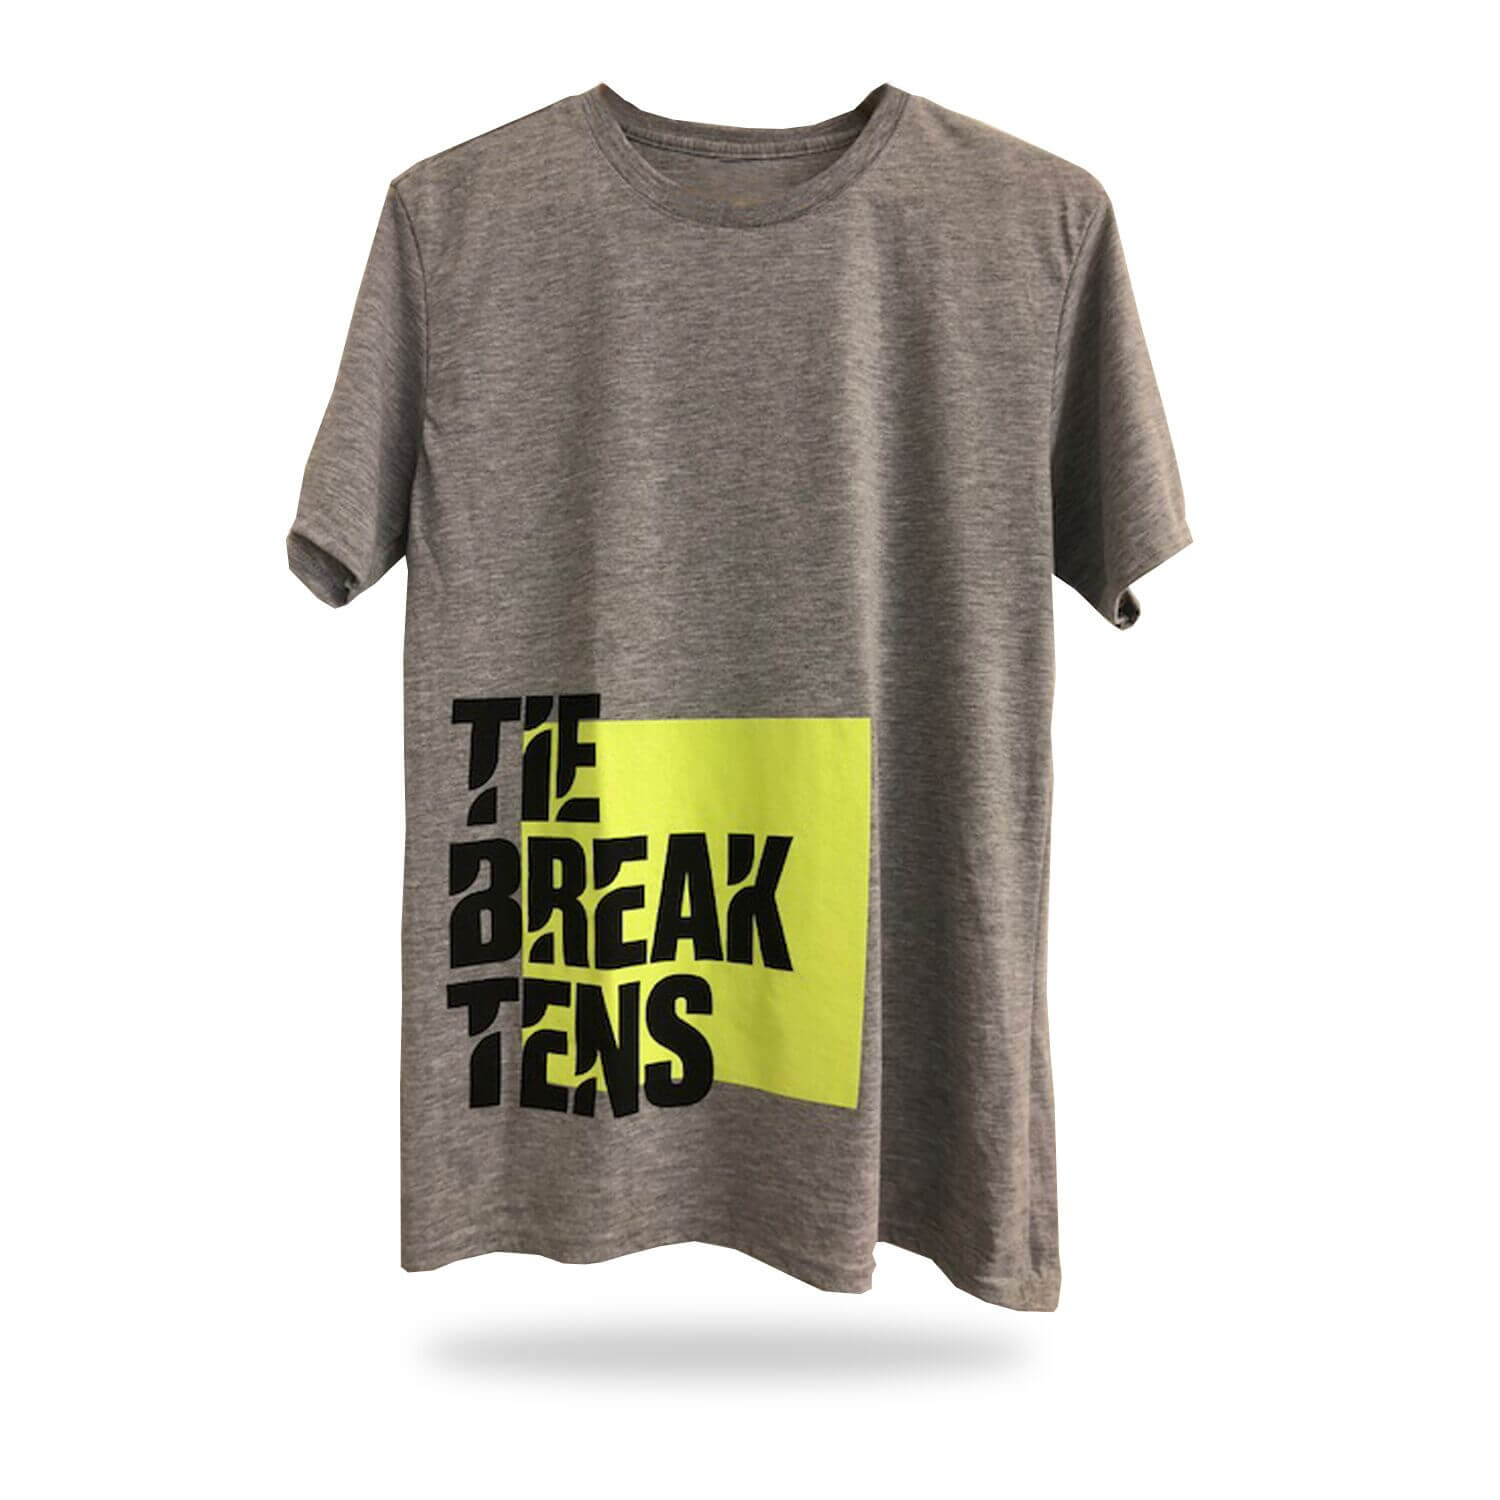 Shop - Tie Break Tens